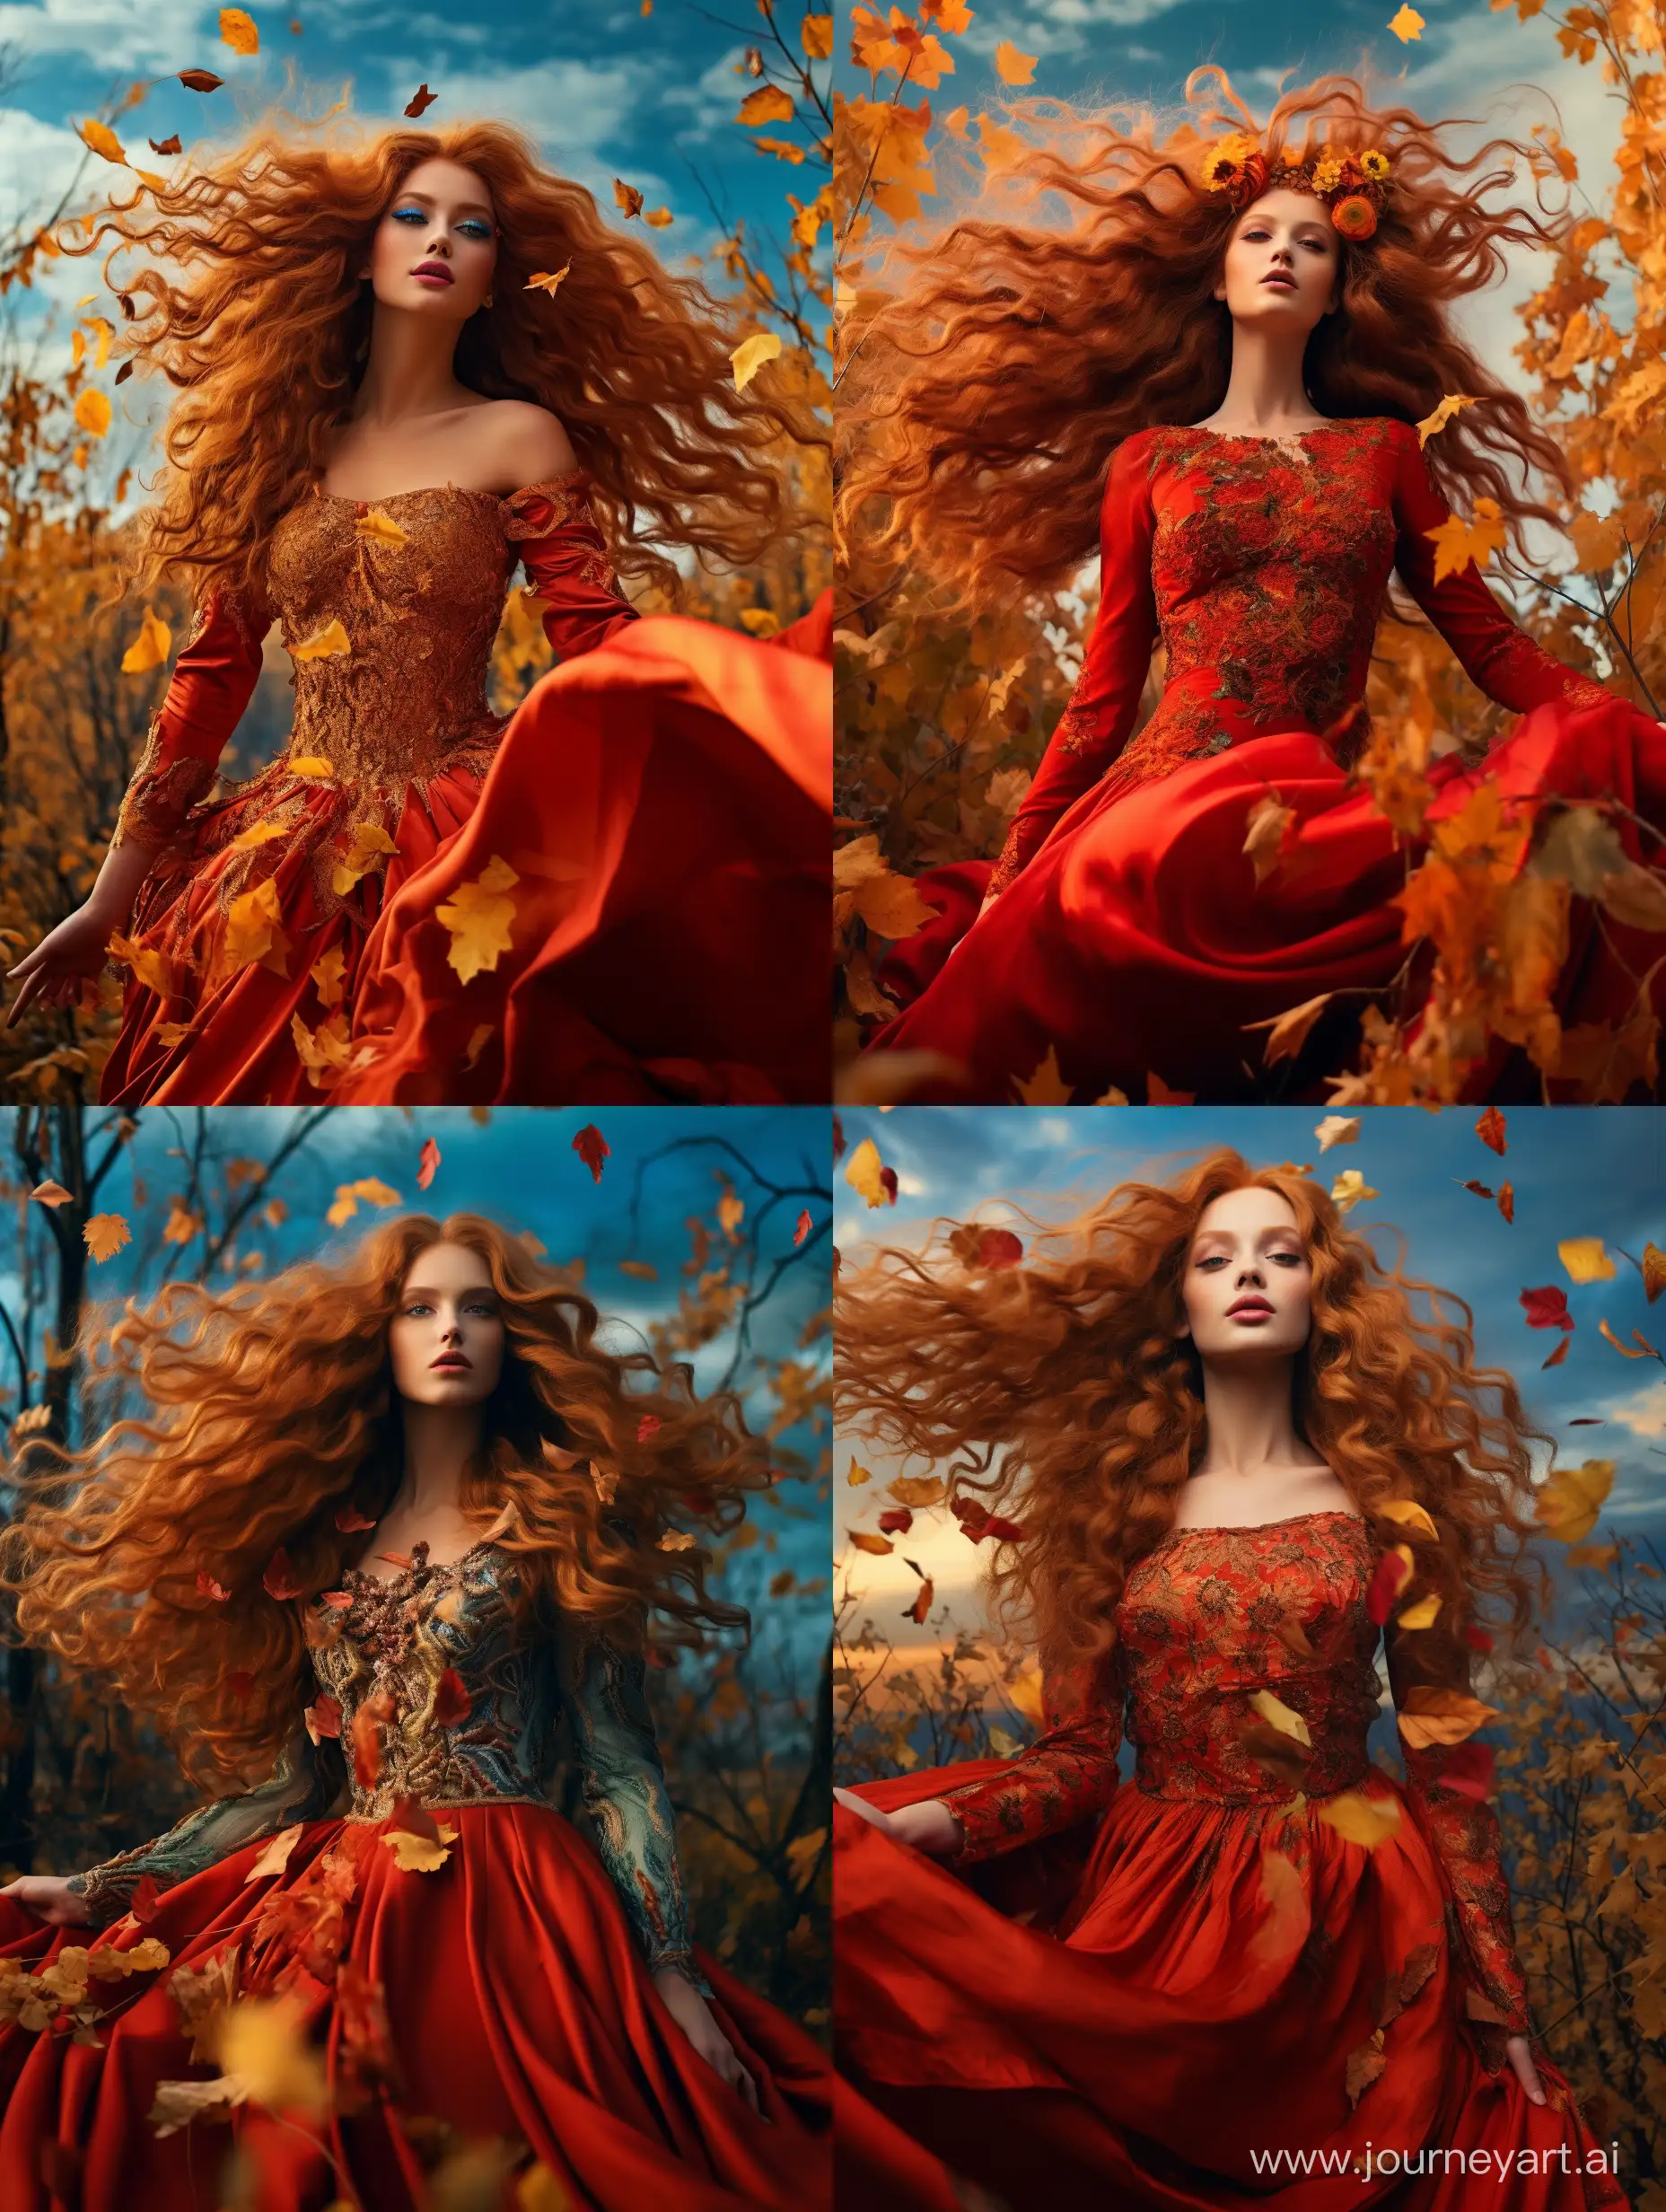 Королева-осень, невероятно красивая девушка в полный рост, с рыжими кудрявыми длинными волосами, на голове венок из красных и желтых листьев, в платье из листьев в осеннем лесу, красивый пейзаж на фоне, синее небо, золотые облака, летают листья, продолжение платья из листьев, завихряются у подола платья, неоновые зрлотые переливы, высокое разрешение, эстетично, красиво, яркое освещение? фотореализм